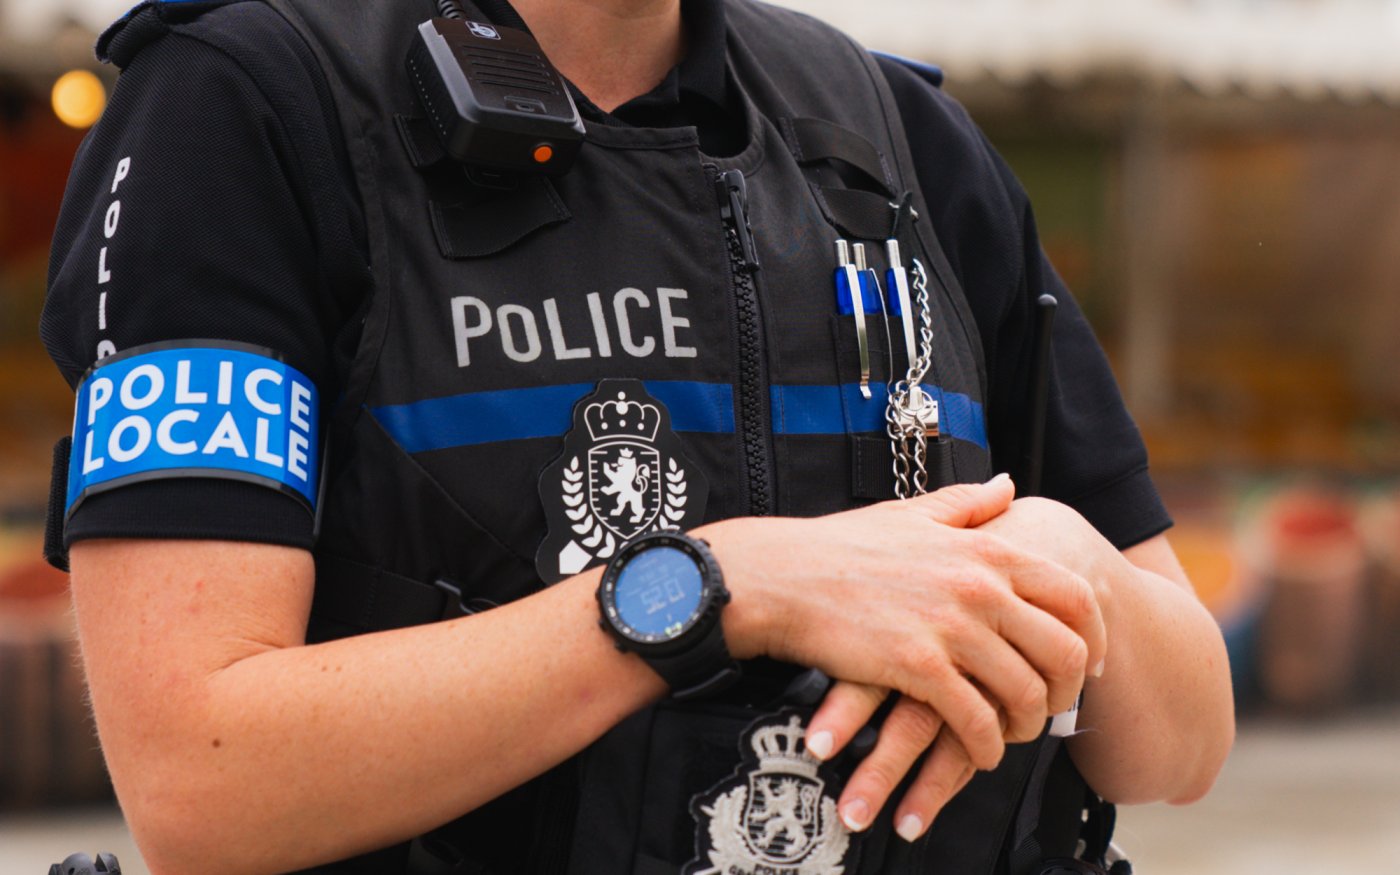 Image type "close up" d'un policier ayant un signe de "police locale" autour du bras